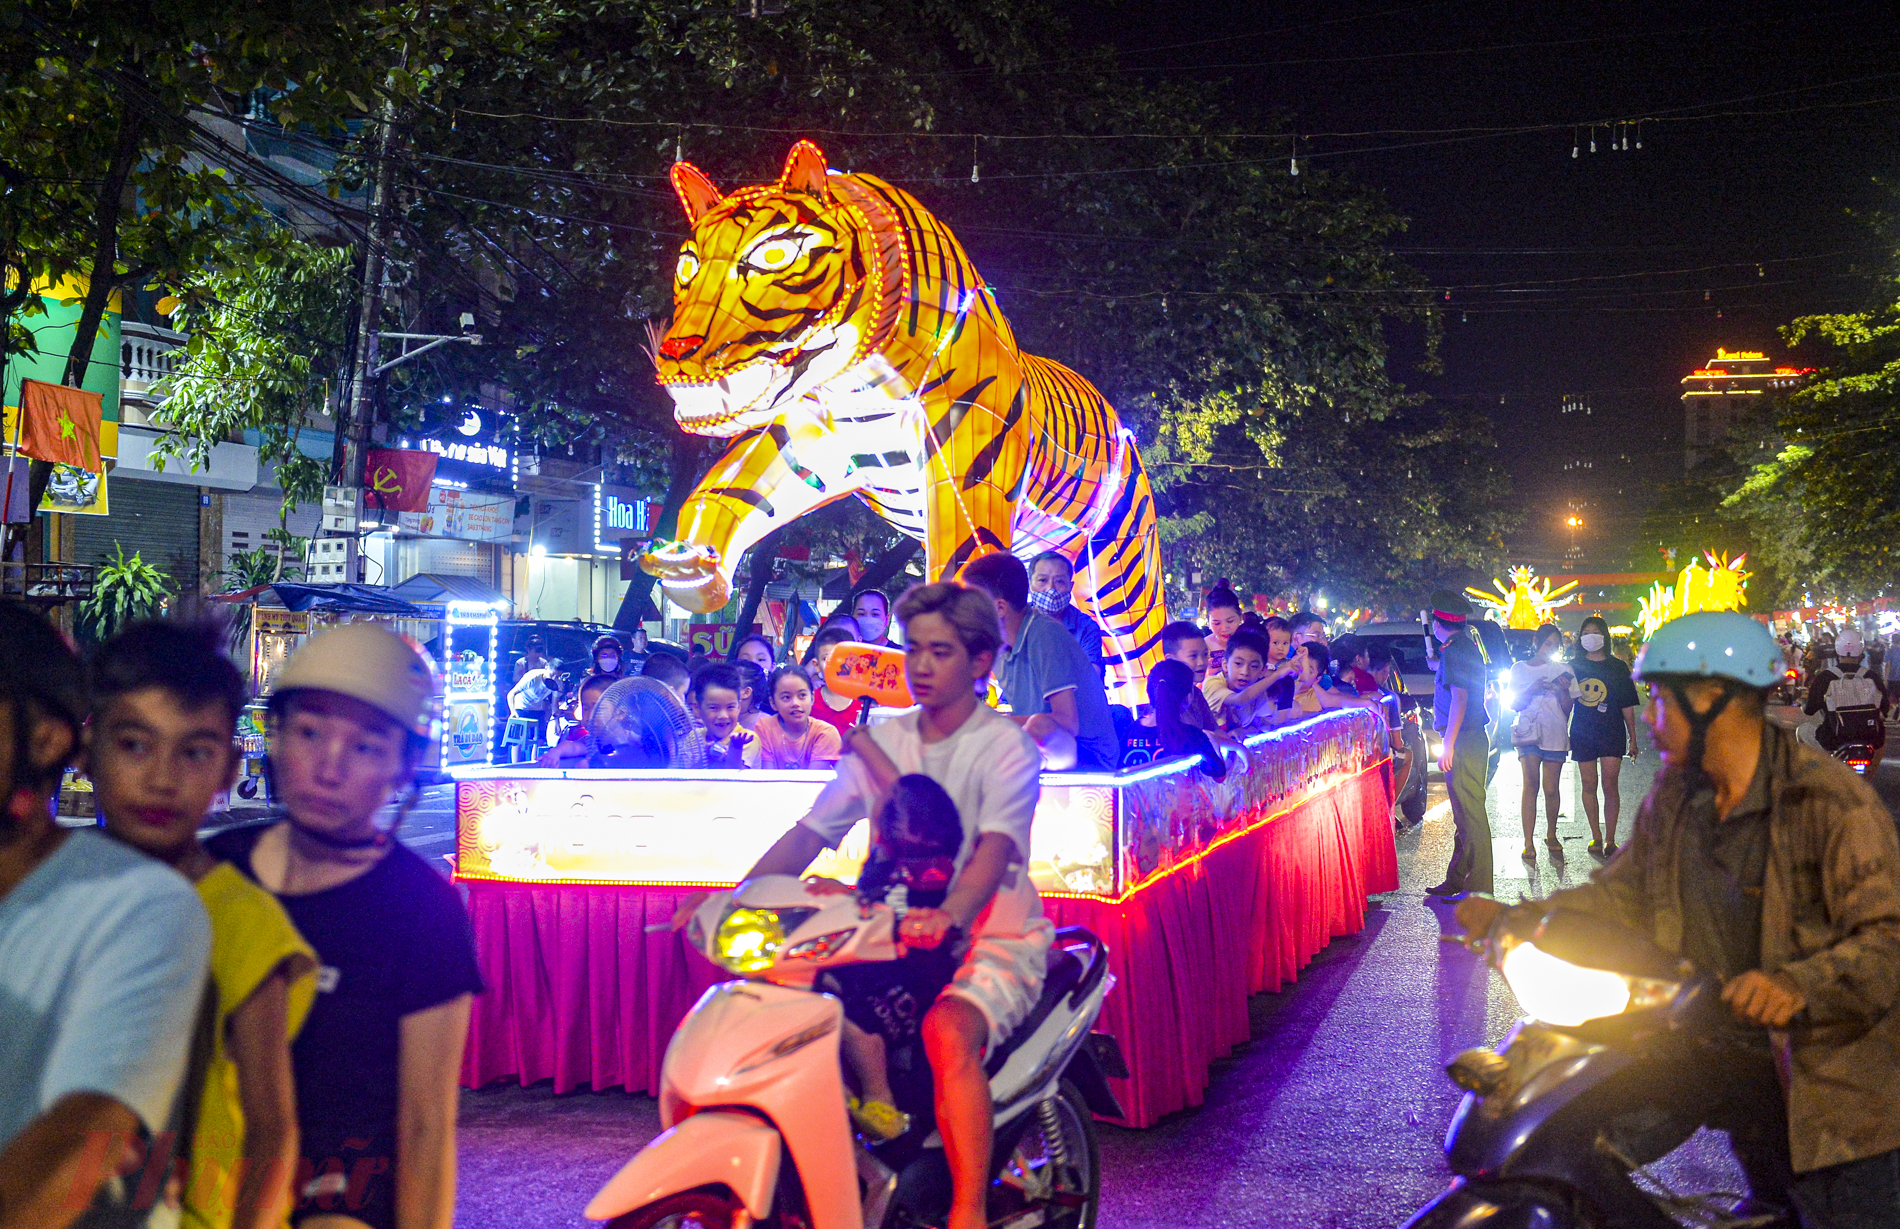 Lễ hội Thành Tuyên đã được sách Kỷ lục Guiness Việt Nam xác nhận là lễ hội có nhiều mô hình đèn trung thu độc đáo, lớn nhất Việt Nam. Trong nhiều năm qua, Lễ hội Thành Tuyên đã thực sự trở thành một sản phẩm du lịch nổi tiếng, đặc sắc của Tuyên Quang, thu hút hàng vạn du khách trong nước và quốc tế mỗi năm.